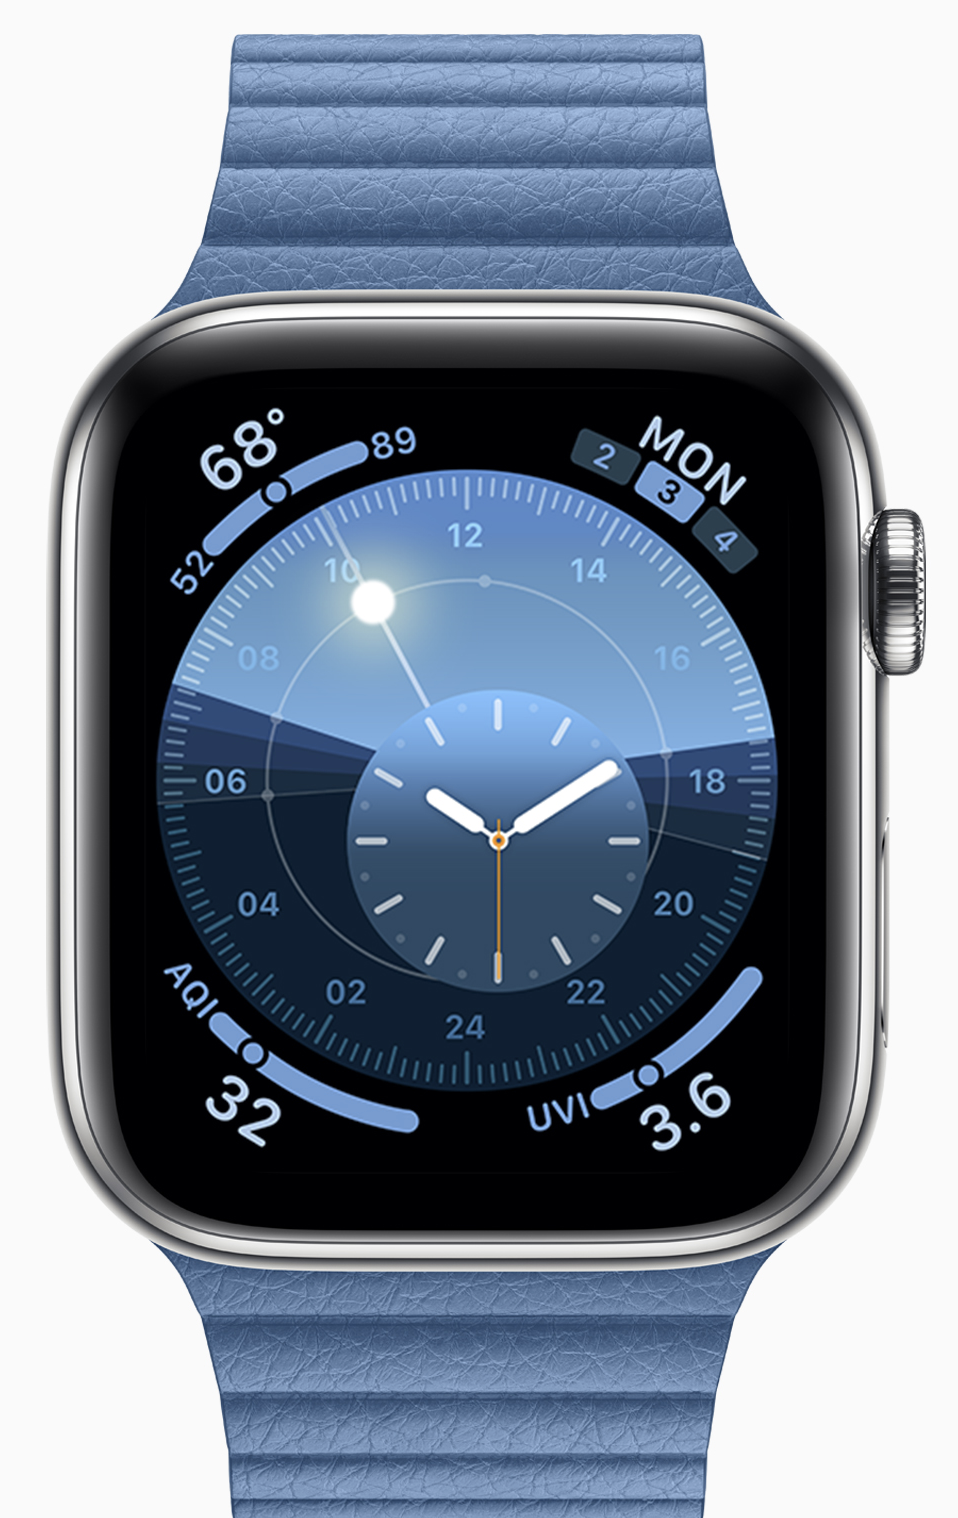 Apple posts first developer beta of watchOS 6.2.5